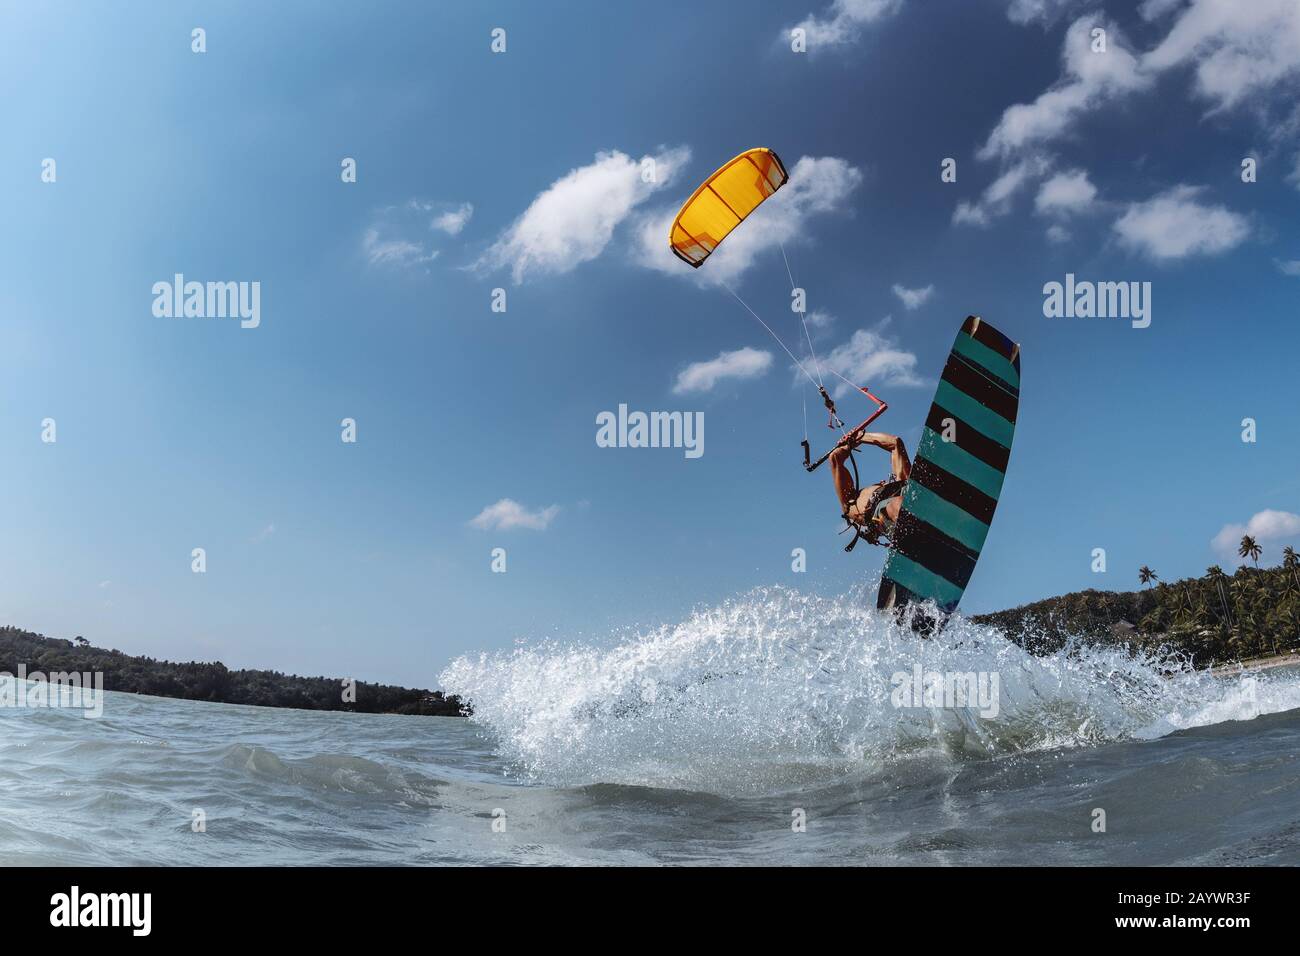 Kite surfeur avec wakeboard saute contre le ciel bleu. Concept de sports nautiques extrêmes Banque D'Images